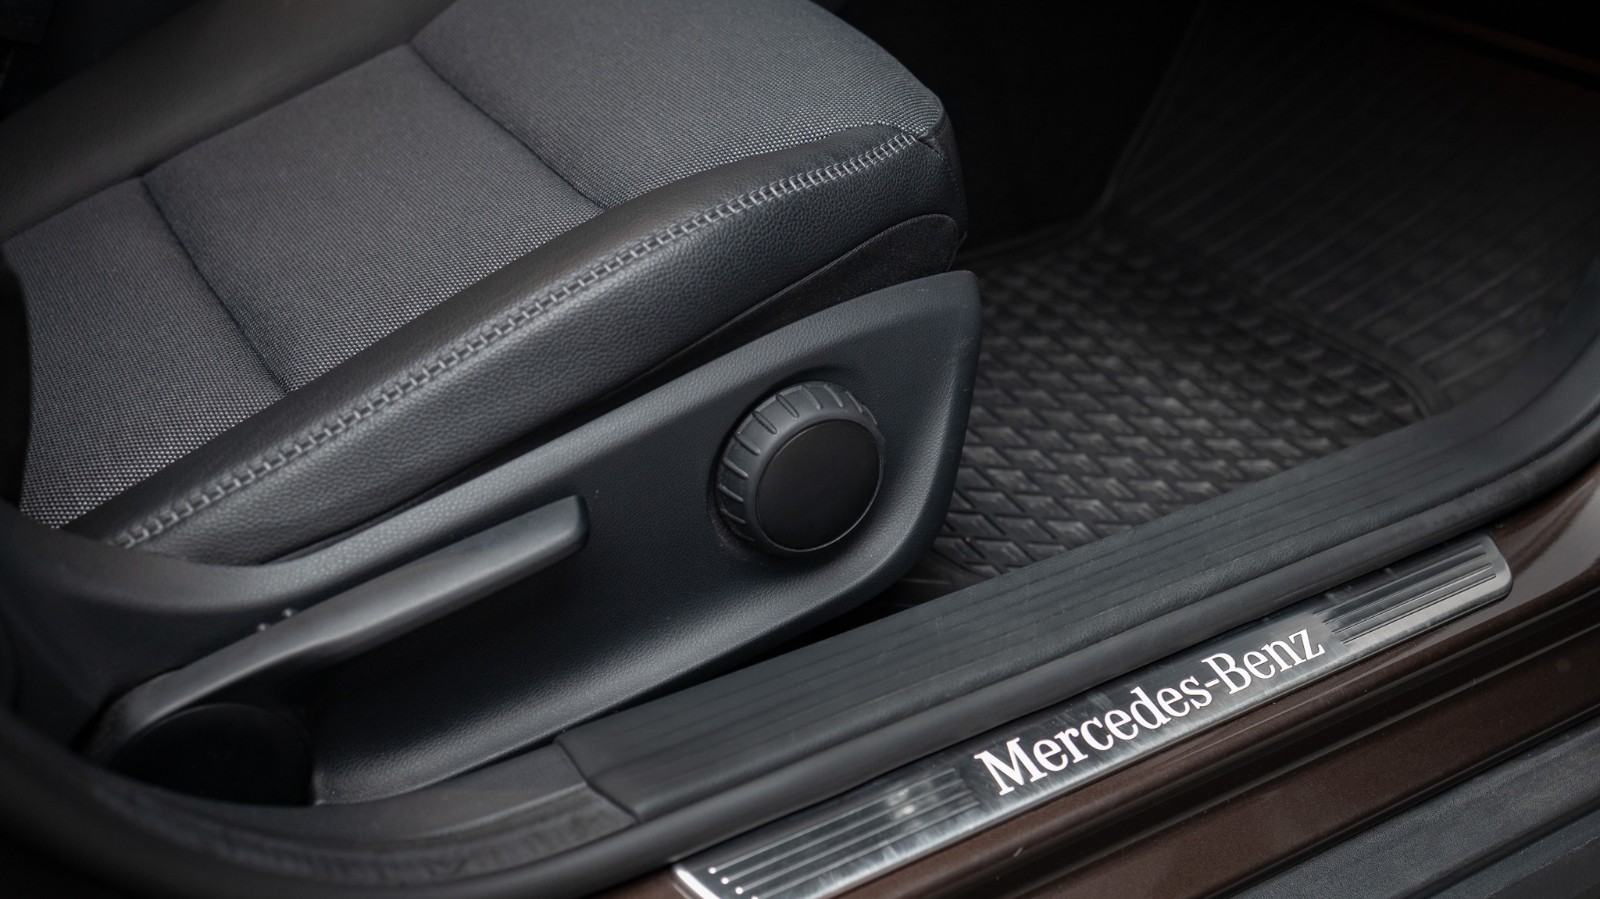 Hovedbilde av Mercedes-Benz GLA 2015